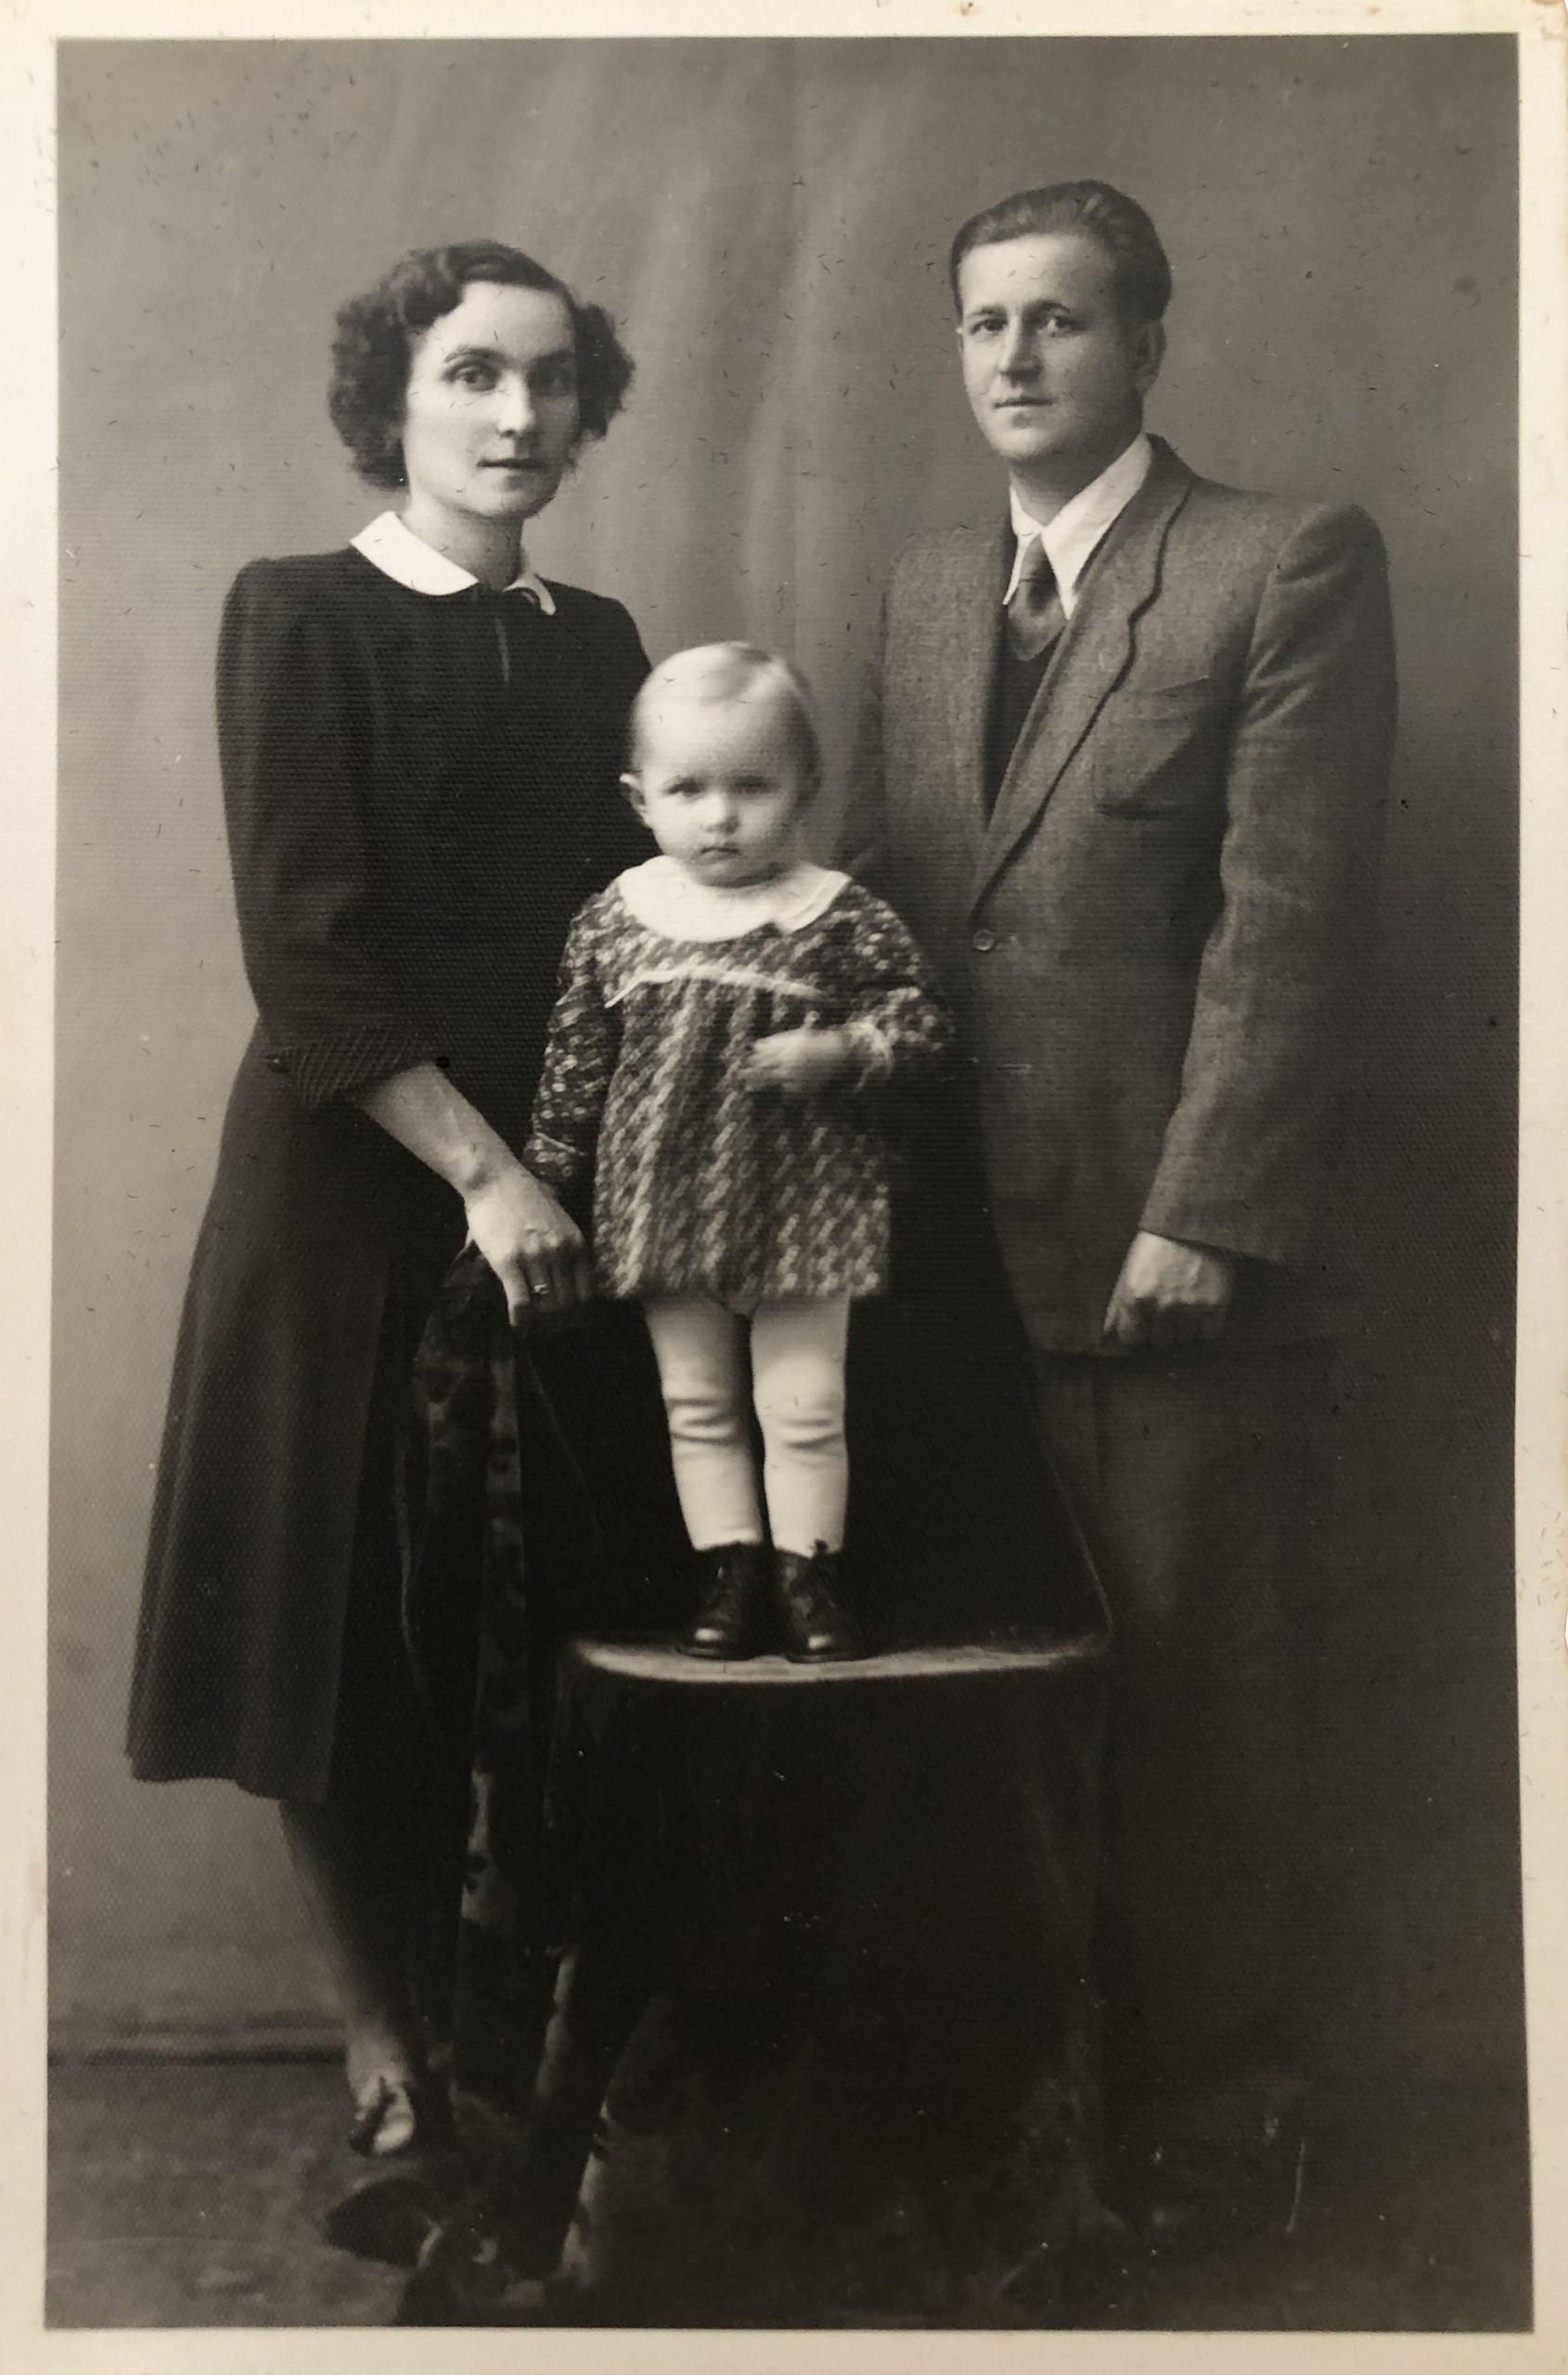 Bà Barbara Schafer khi còn bé, cùng với cha mẹ của bà ở Ba Lan. (Ảnh: Đăng dưới sự cho phép của bà Barbara Schafer)